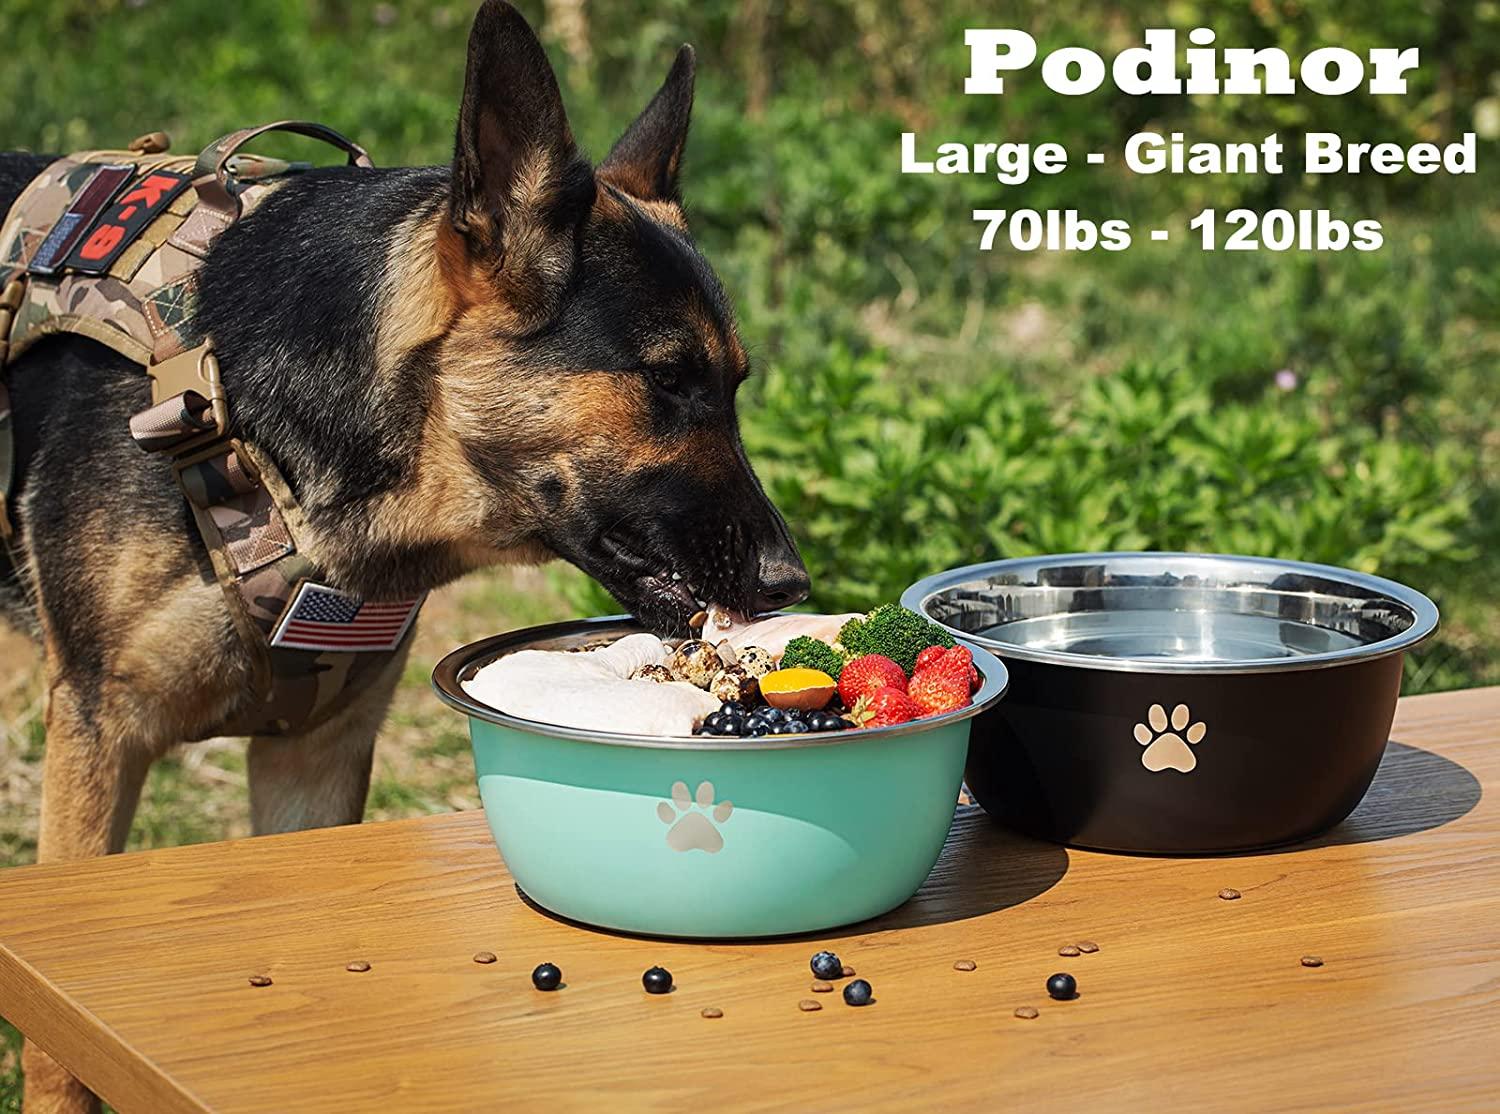 PEDAY Large Dog Water Bowl